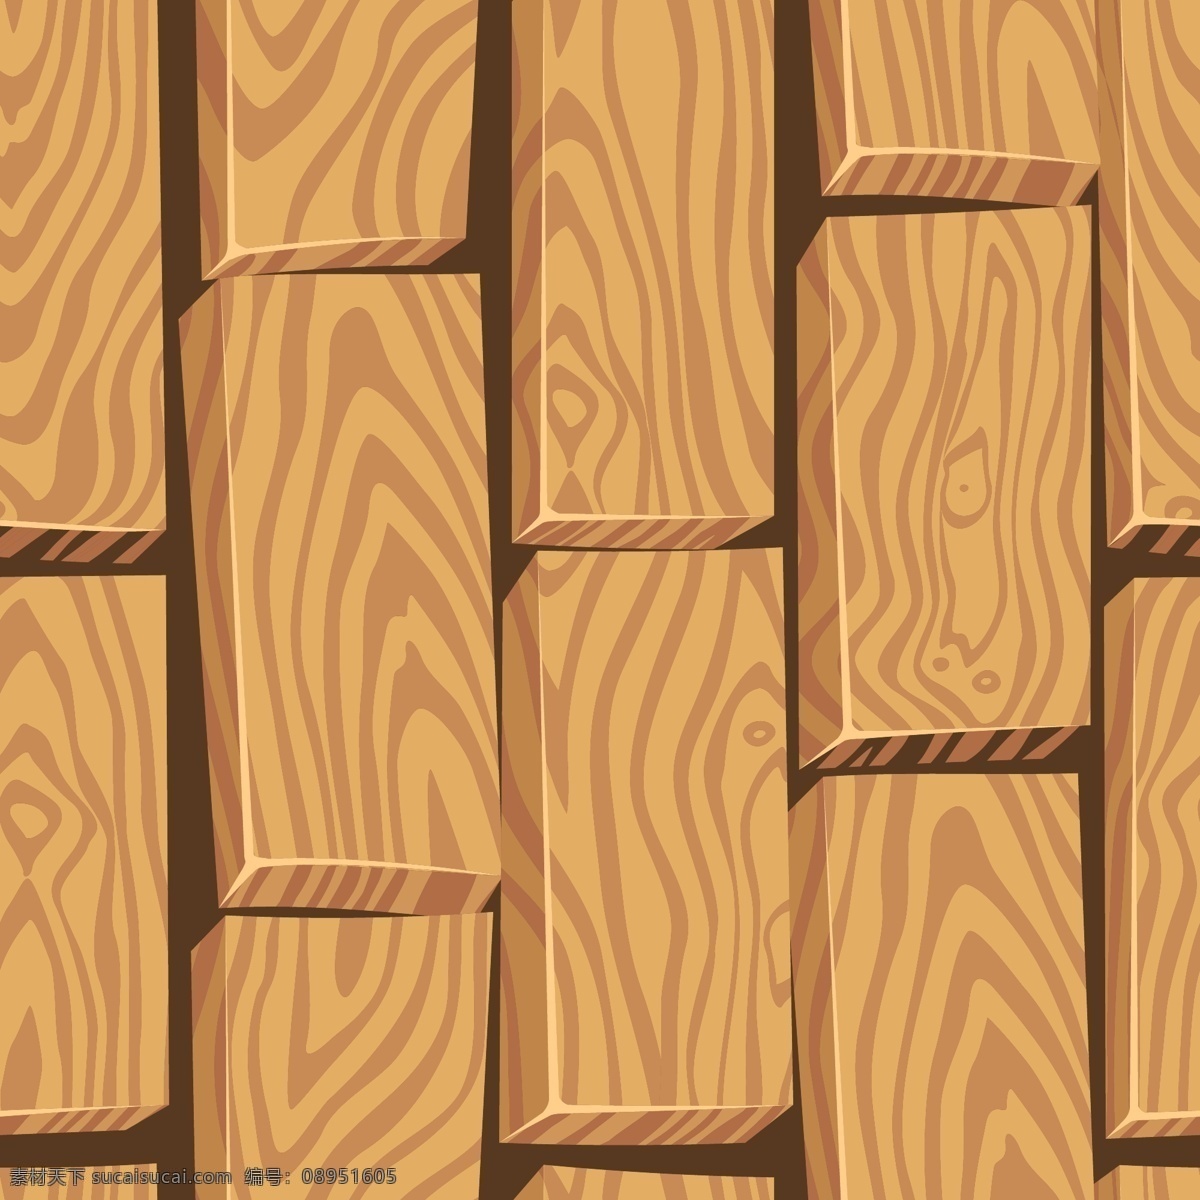 轻木 卡通 风格 纹理 背景 抽象 自然 人物 木板 建筑 装饰 绘画 松木 木制 树枝 材料 橡木 树干 软木